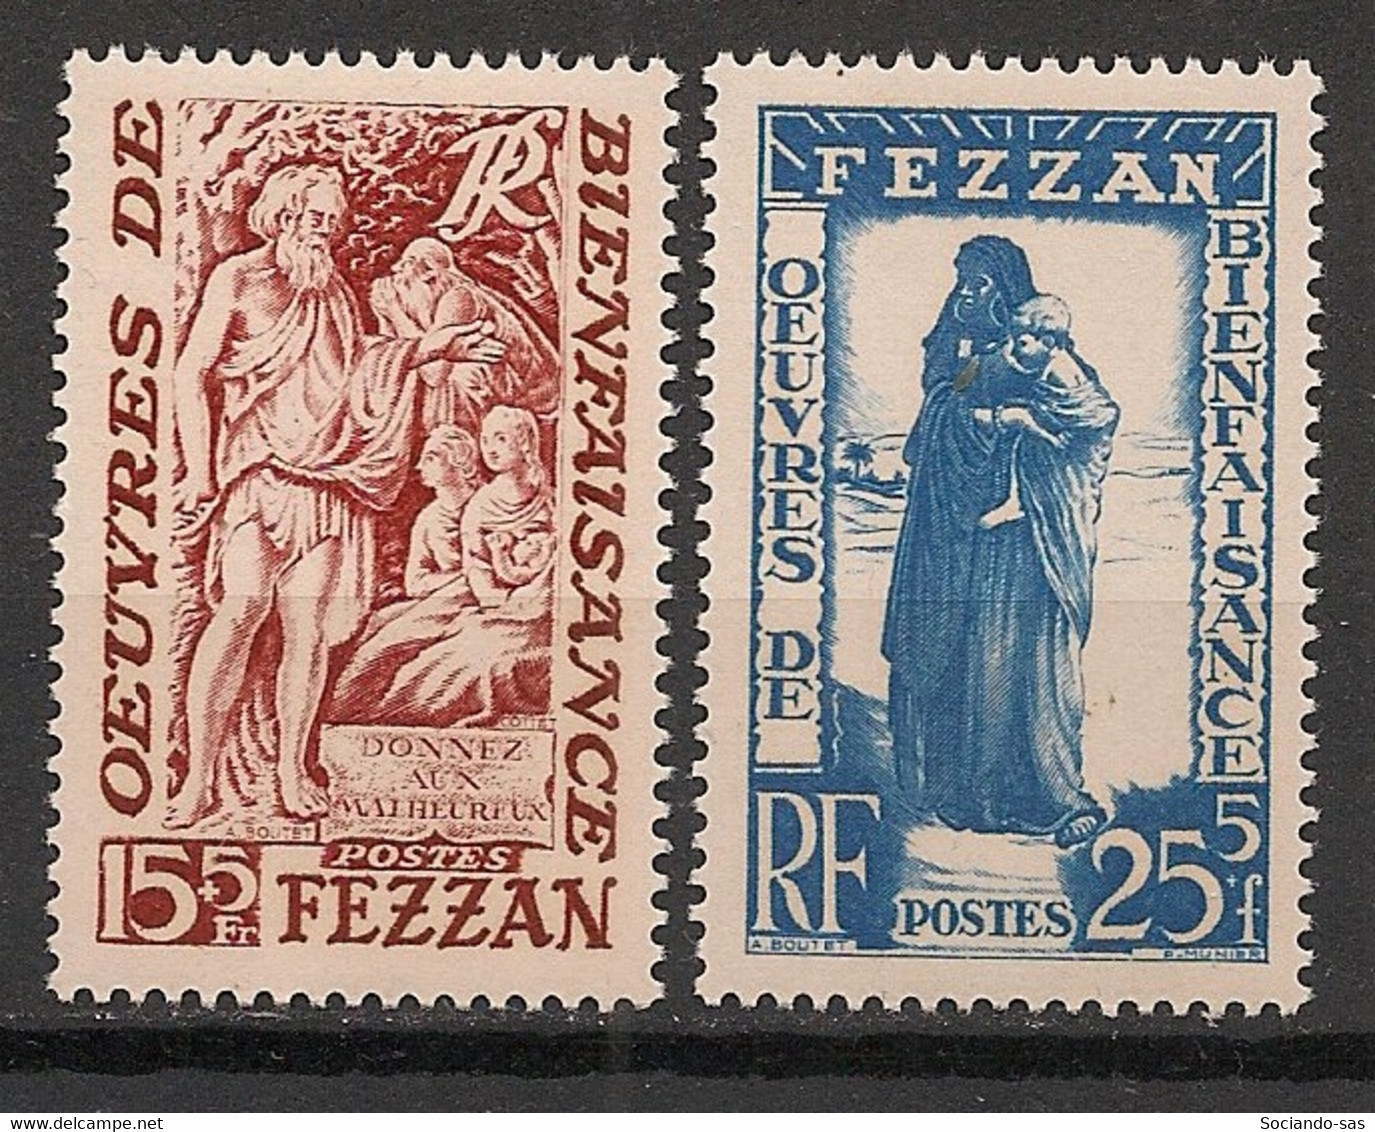 FEZZAN - 1950 - N°Yv. 54 à 55 - Série Complète - Neuf Luxe ** / MNH / Postfrisch - Neufs